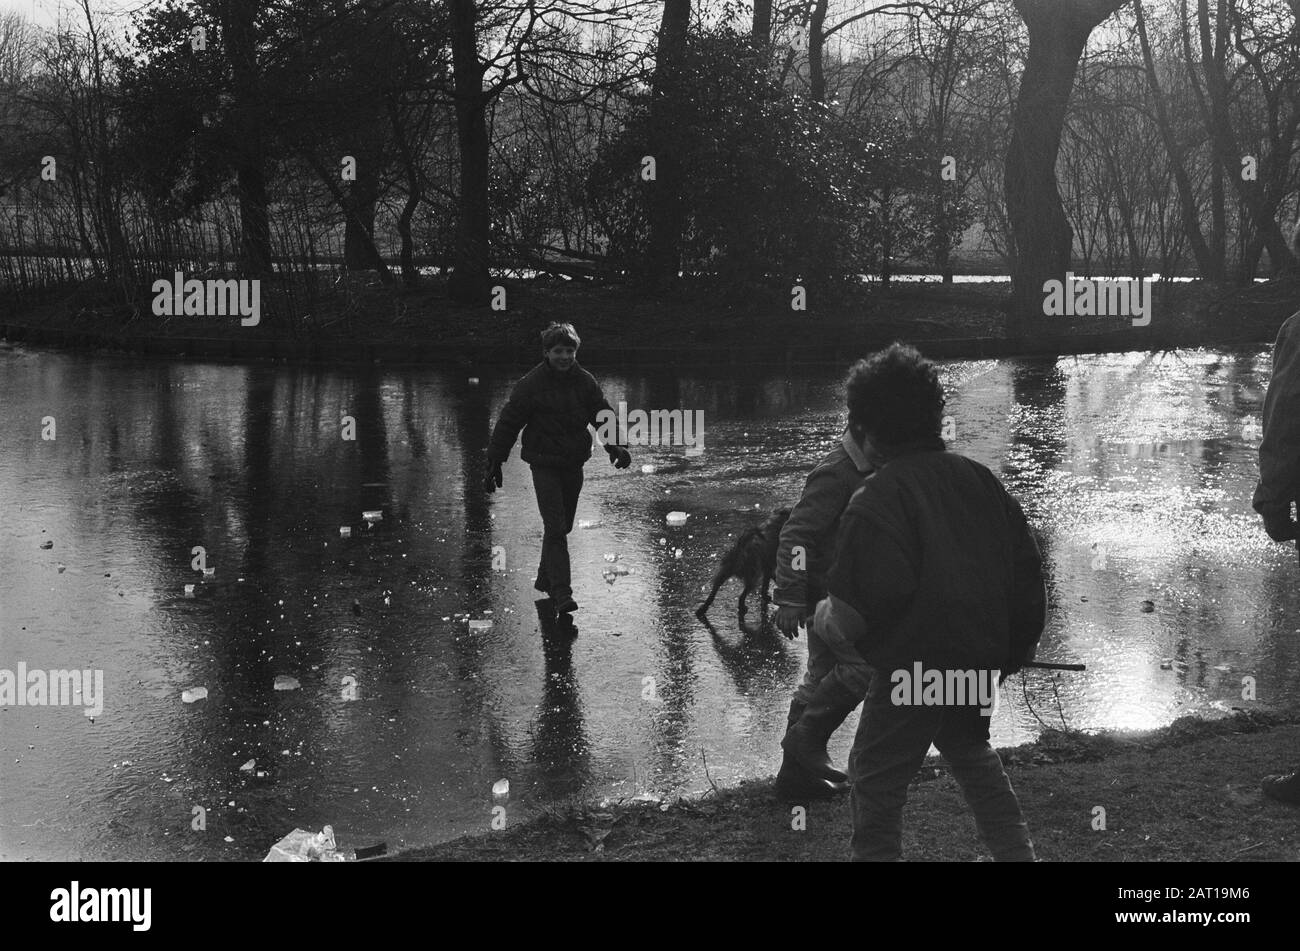 Premier darediable sur la glace dans le Vondelpark d'Amsterdam Date: 5 février 1986 lieu: Amsterdam, Noord-Holland mots clés: Glace, garçons, froid, parcs, hiver Banque D'Images